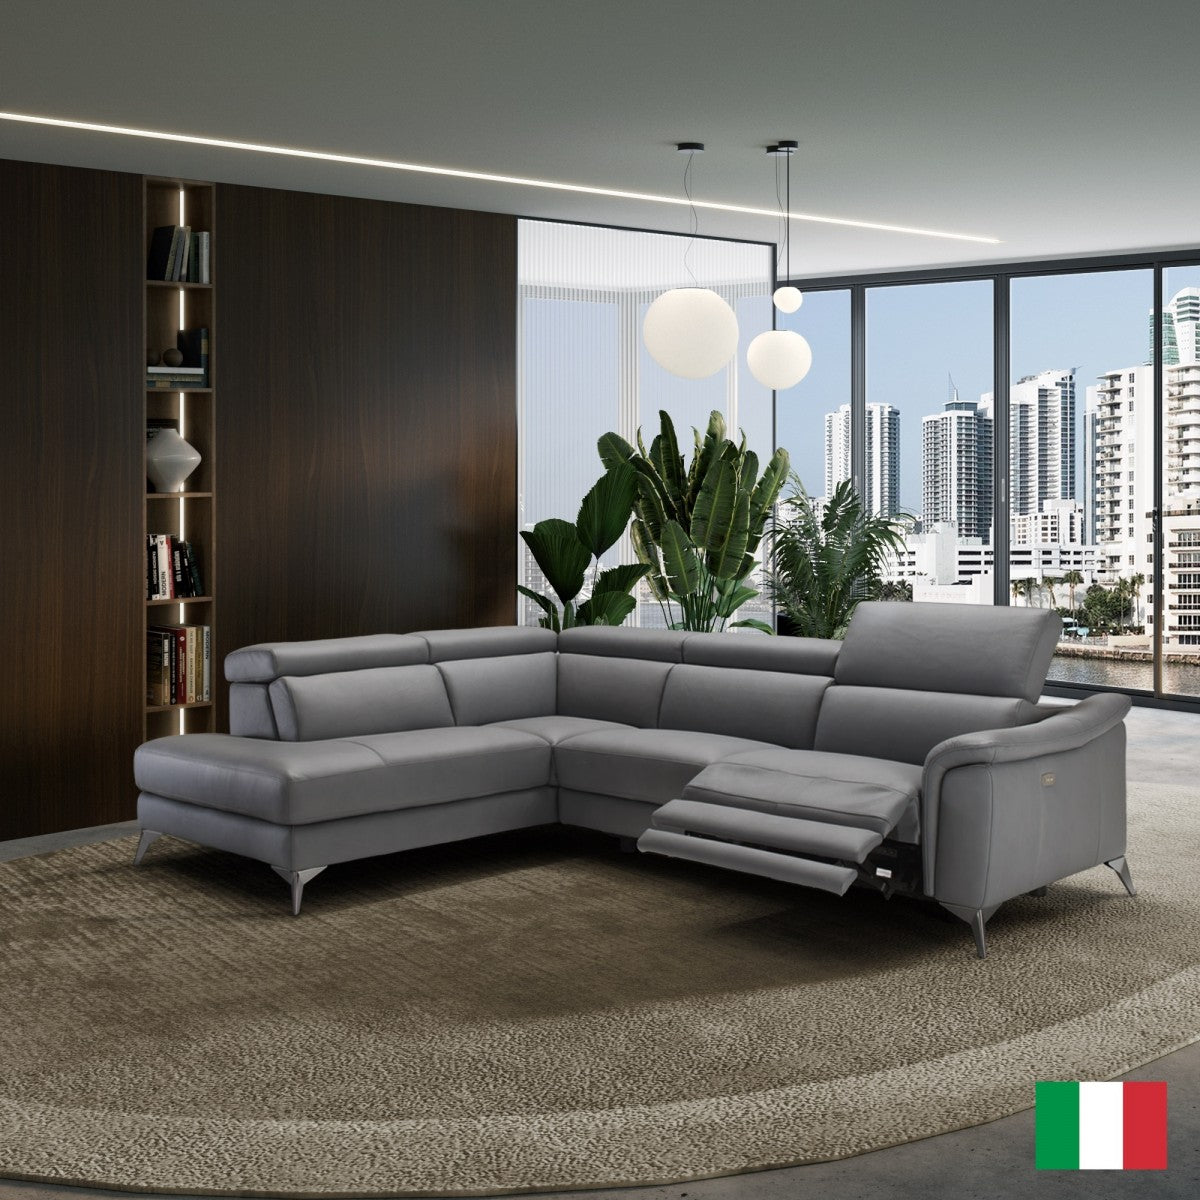 Coronelli Collezioni Monte Carlo - Italian Modern Grey Leather LAF Sectional Sofa